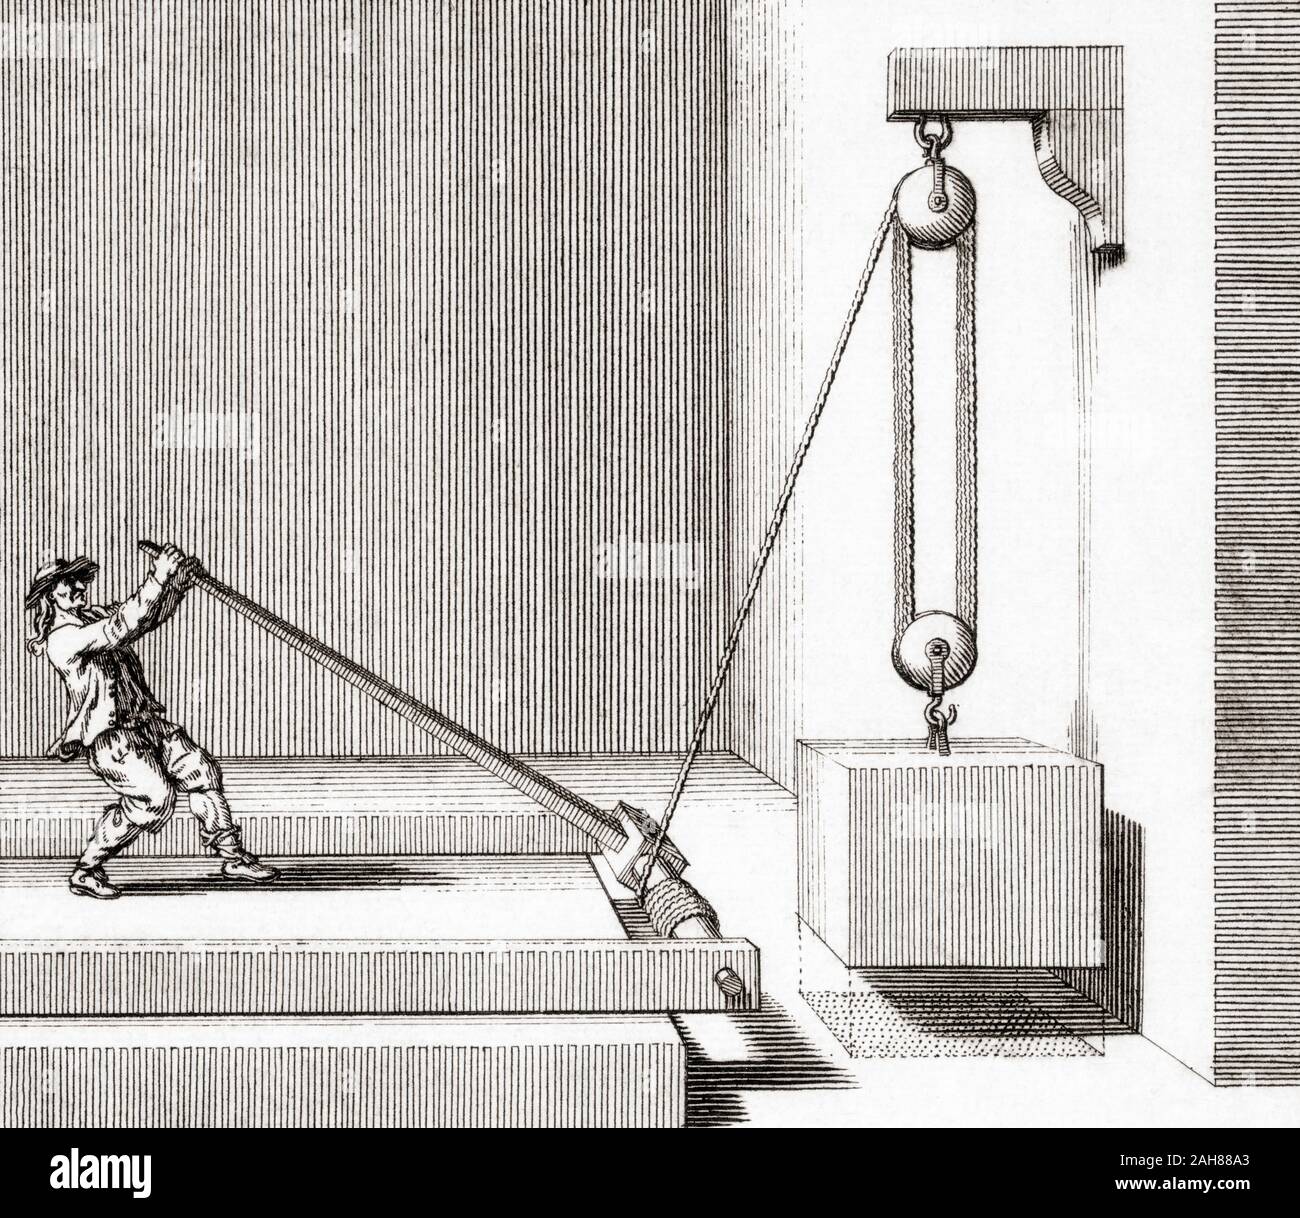 Menschen, die eine Riemenscheibe mit einem Hebel und Drehpunkt. Nach einem 18. Jahrhundert arbeiten. Stockfoto